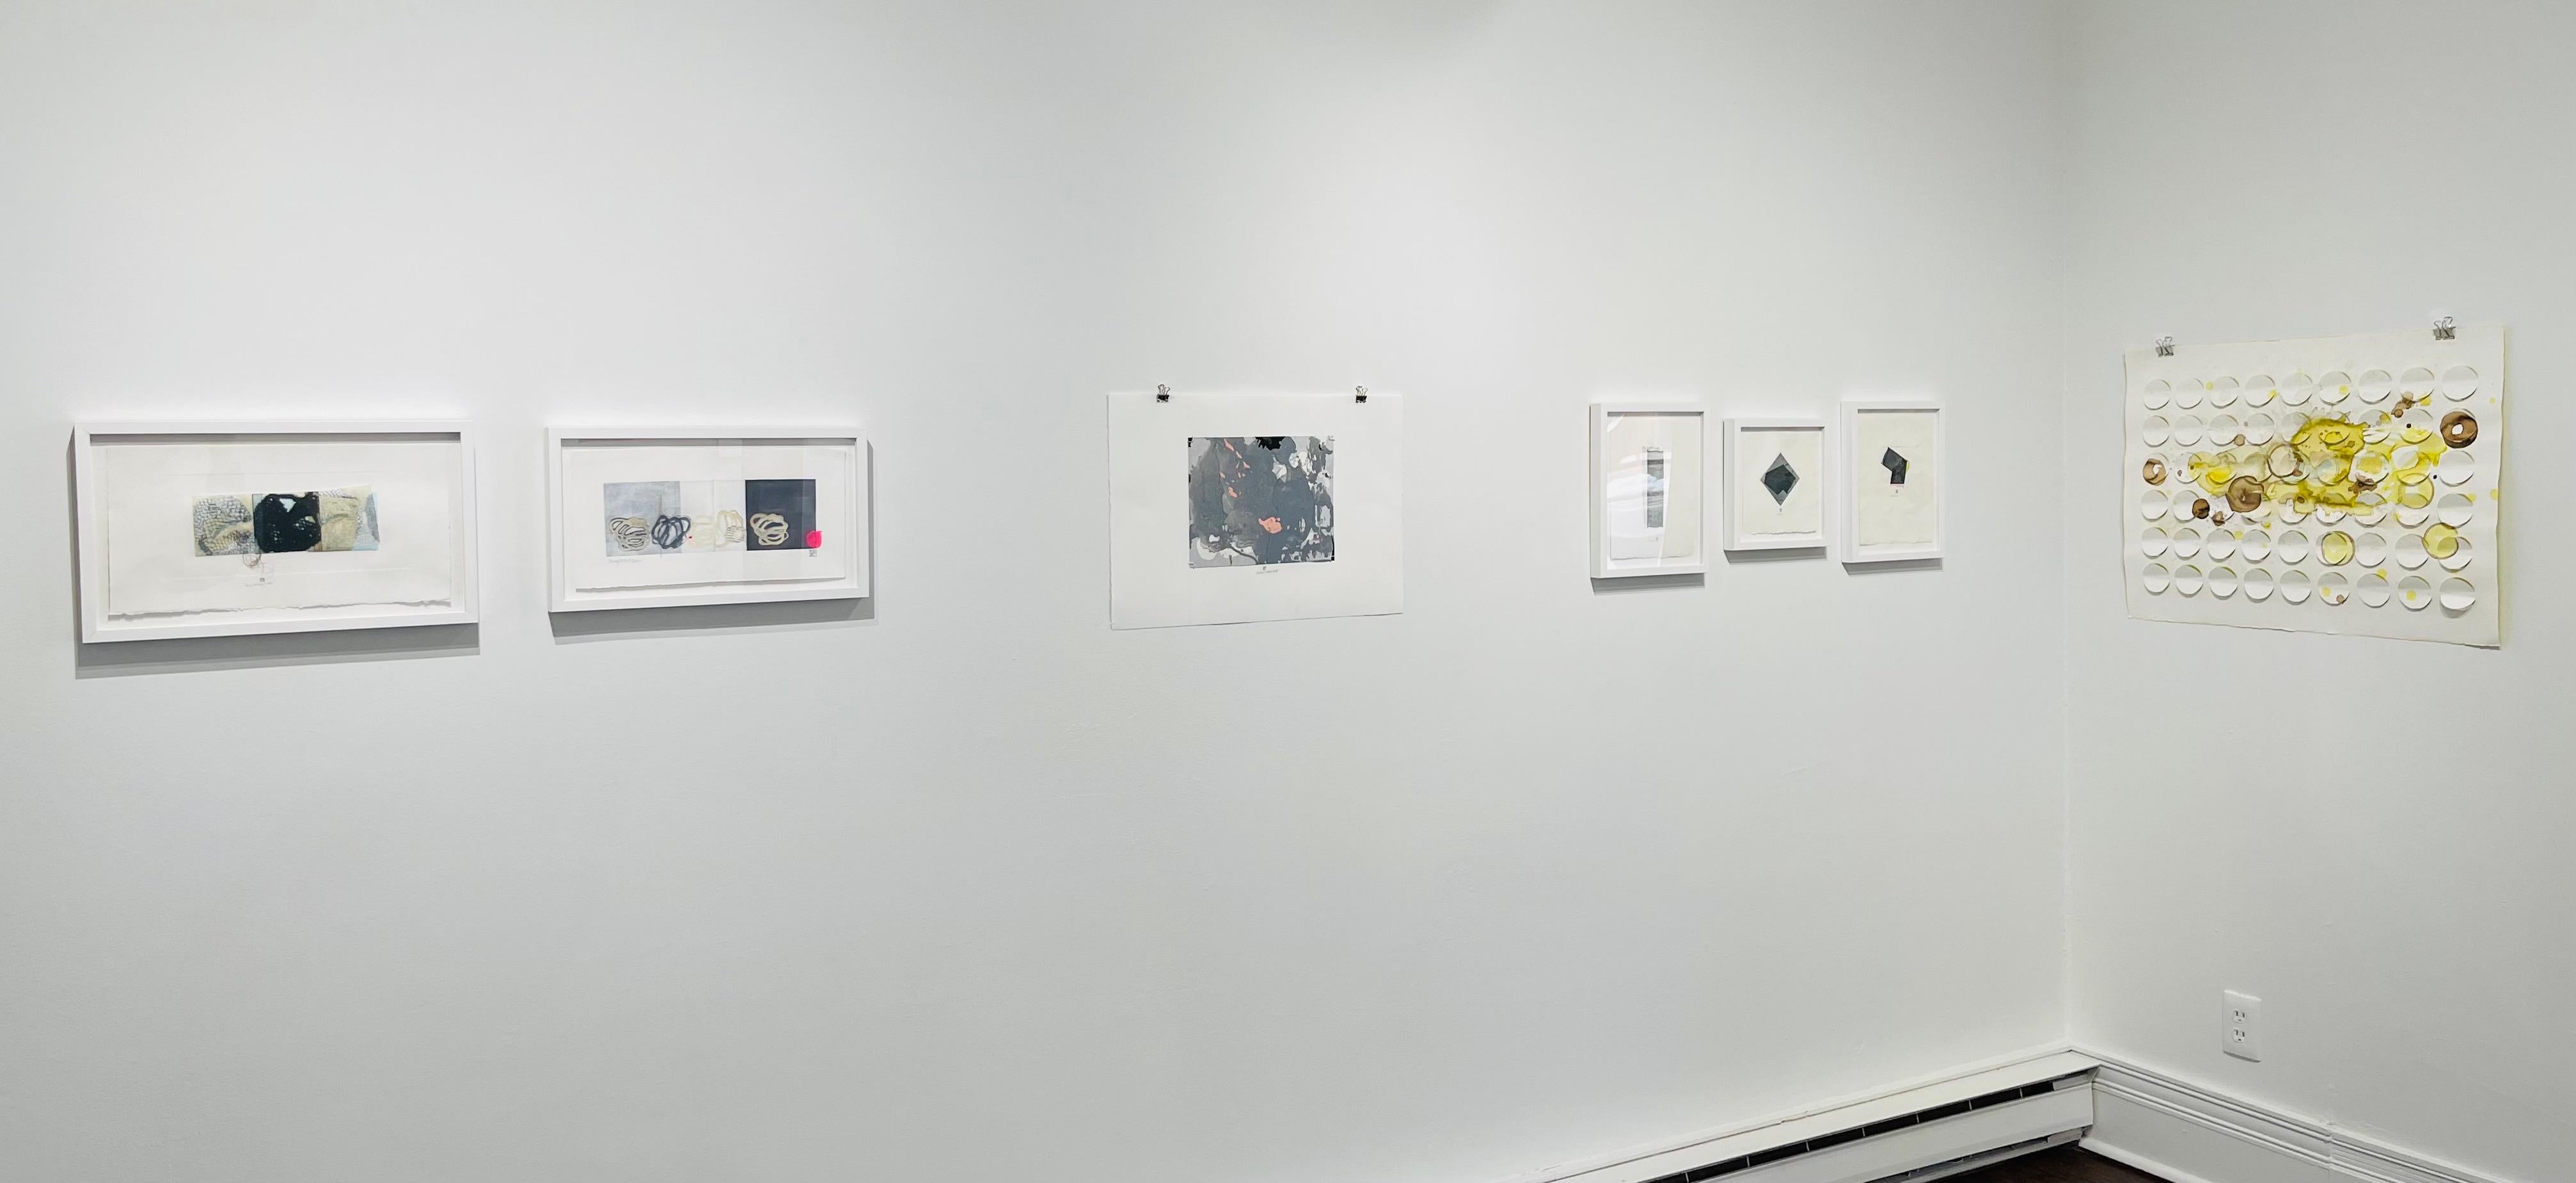 SheHadItBackwards, monotype abstrait gris et rose sur papier, tons pastel - Print de Karin Bruckner